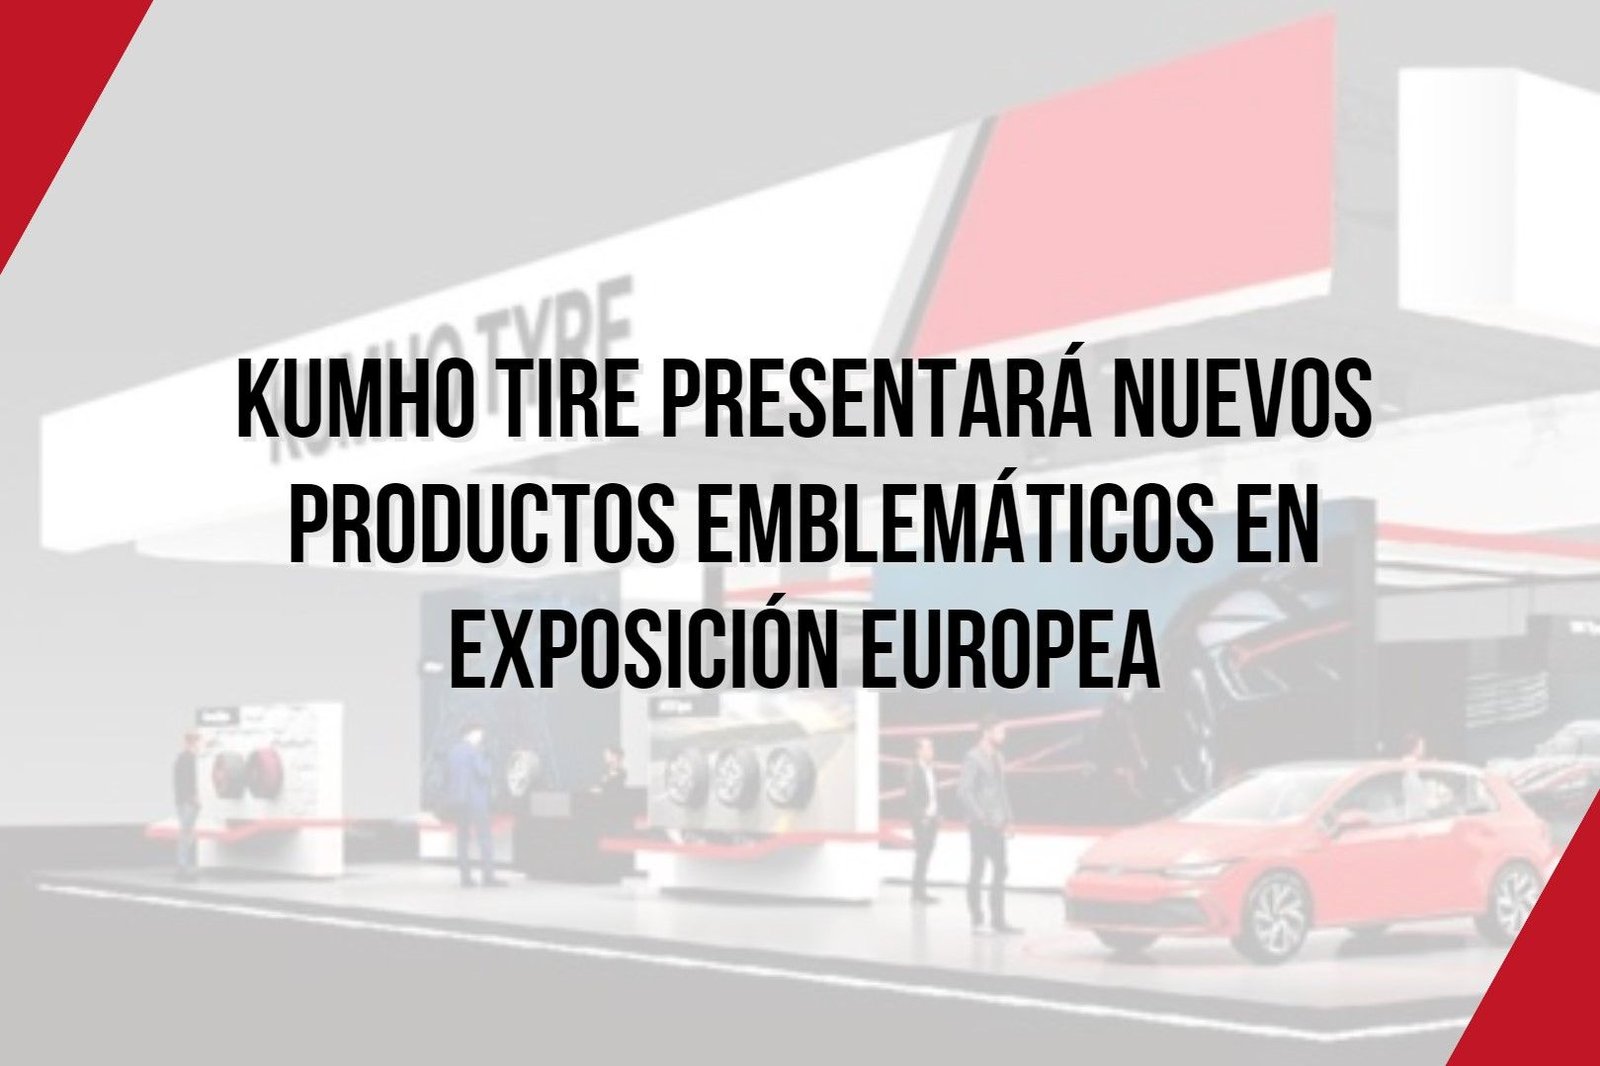 Kumho Tire presentará nuevos productos emblemáticos en exposición europea